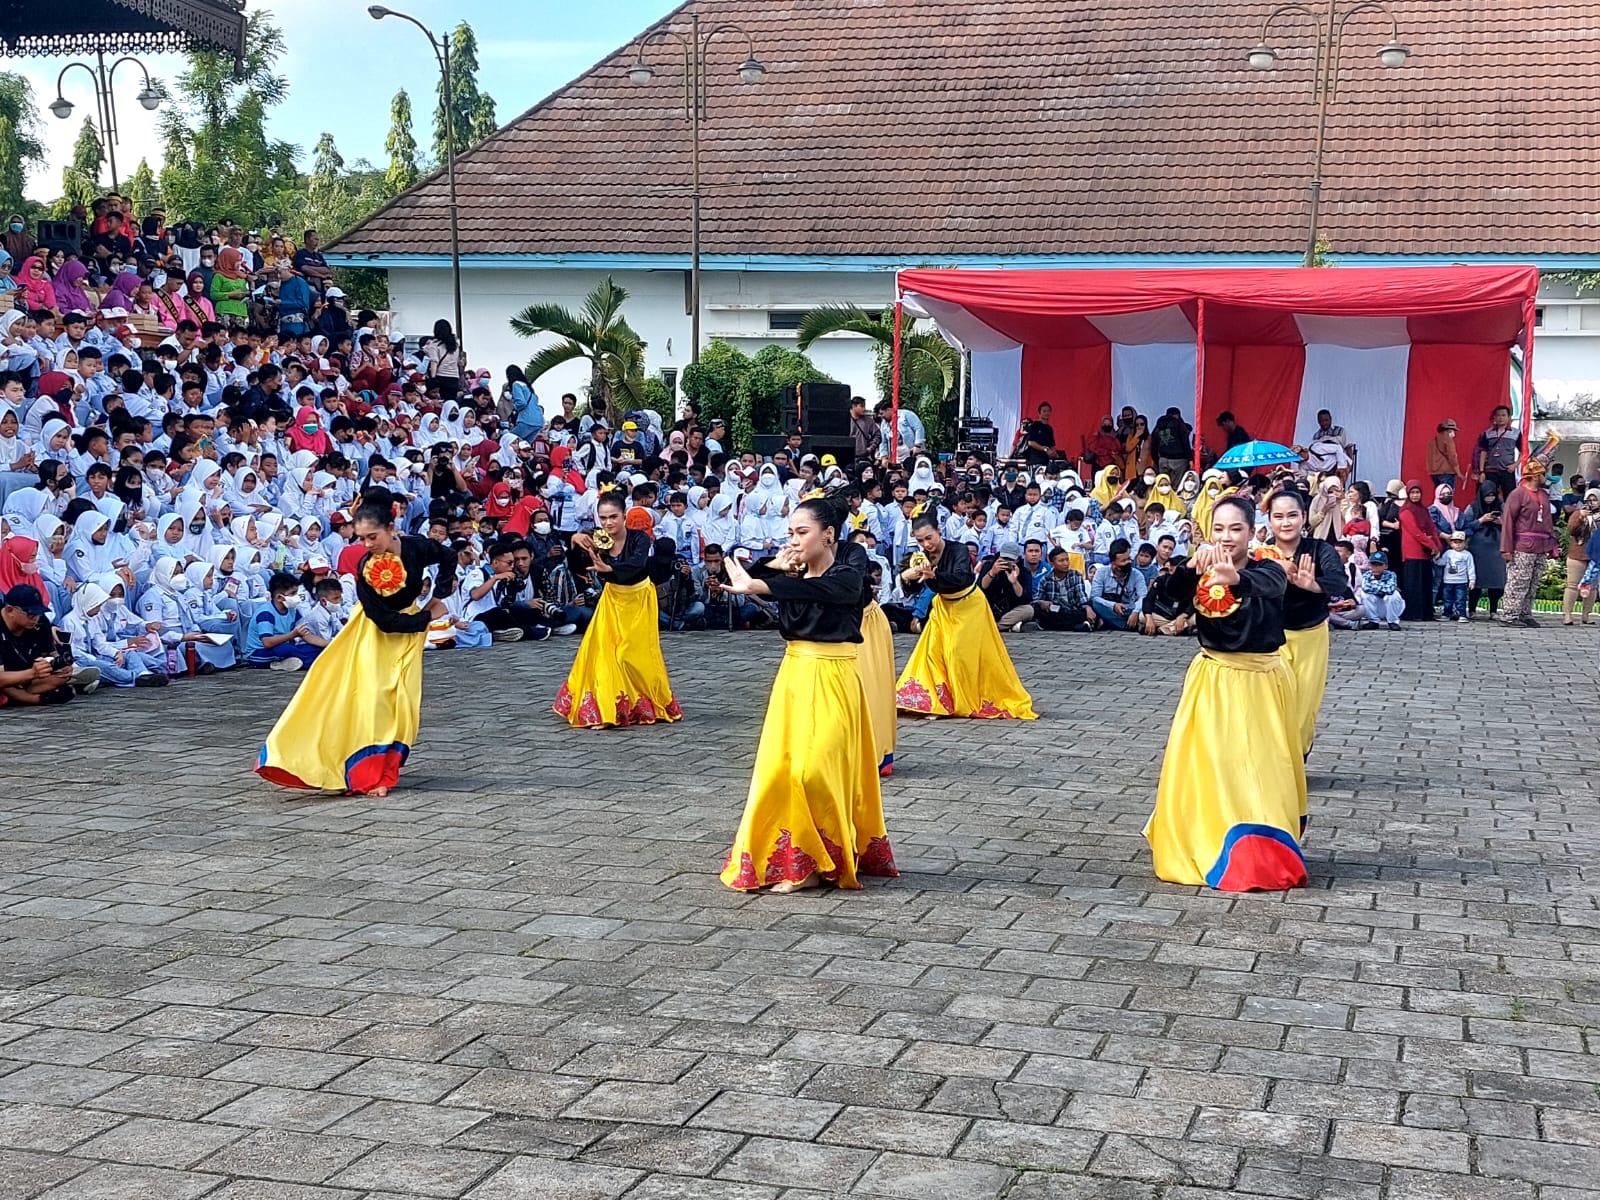 TIFAF 2022 diawali dengan penampilan kesenian lewat kegiatan Kirab Budaya dari 10 kabupaten/kota di Kaltim dan 18 kecamatan se-Kukar. (Supri/Kaltimtoday.co)